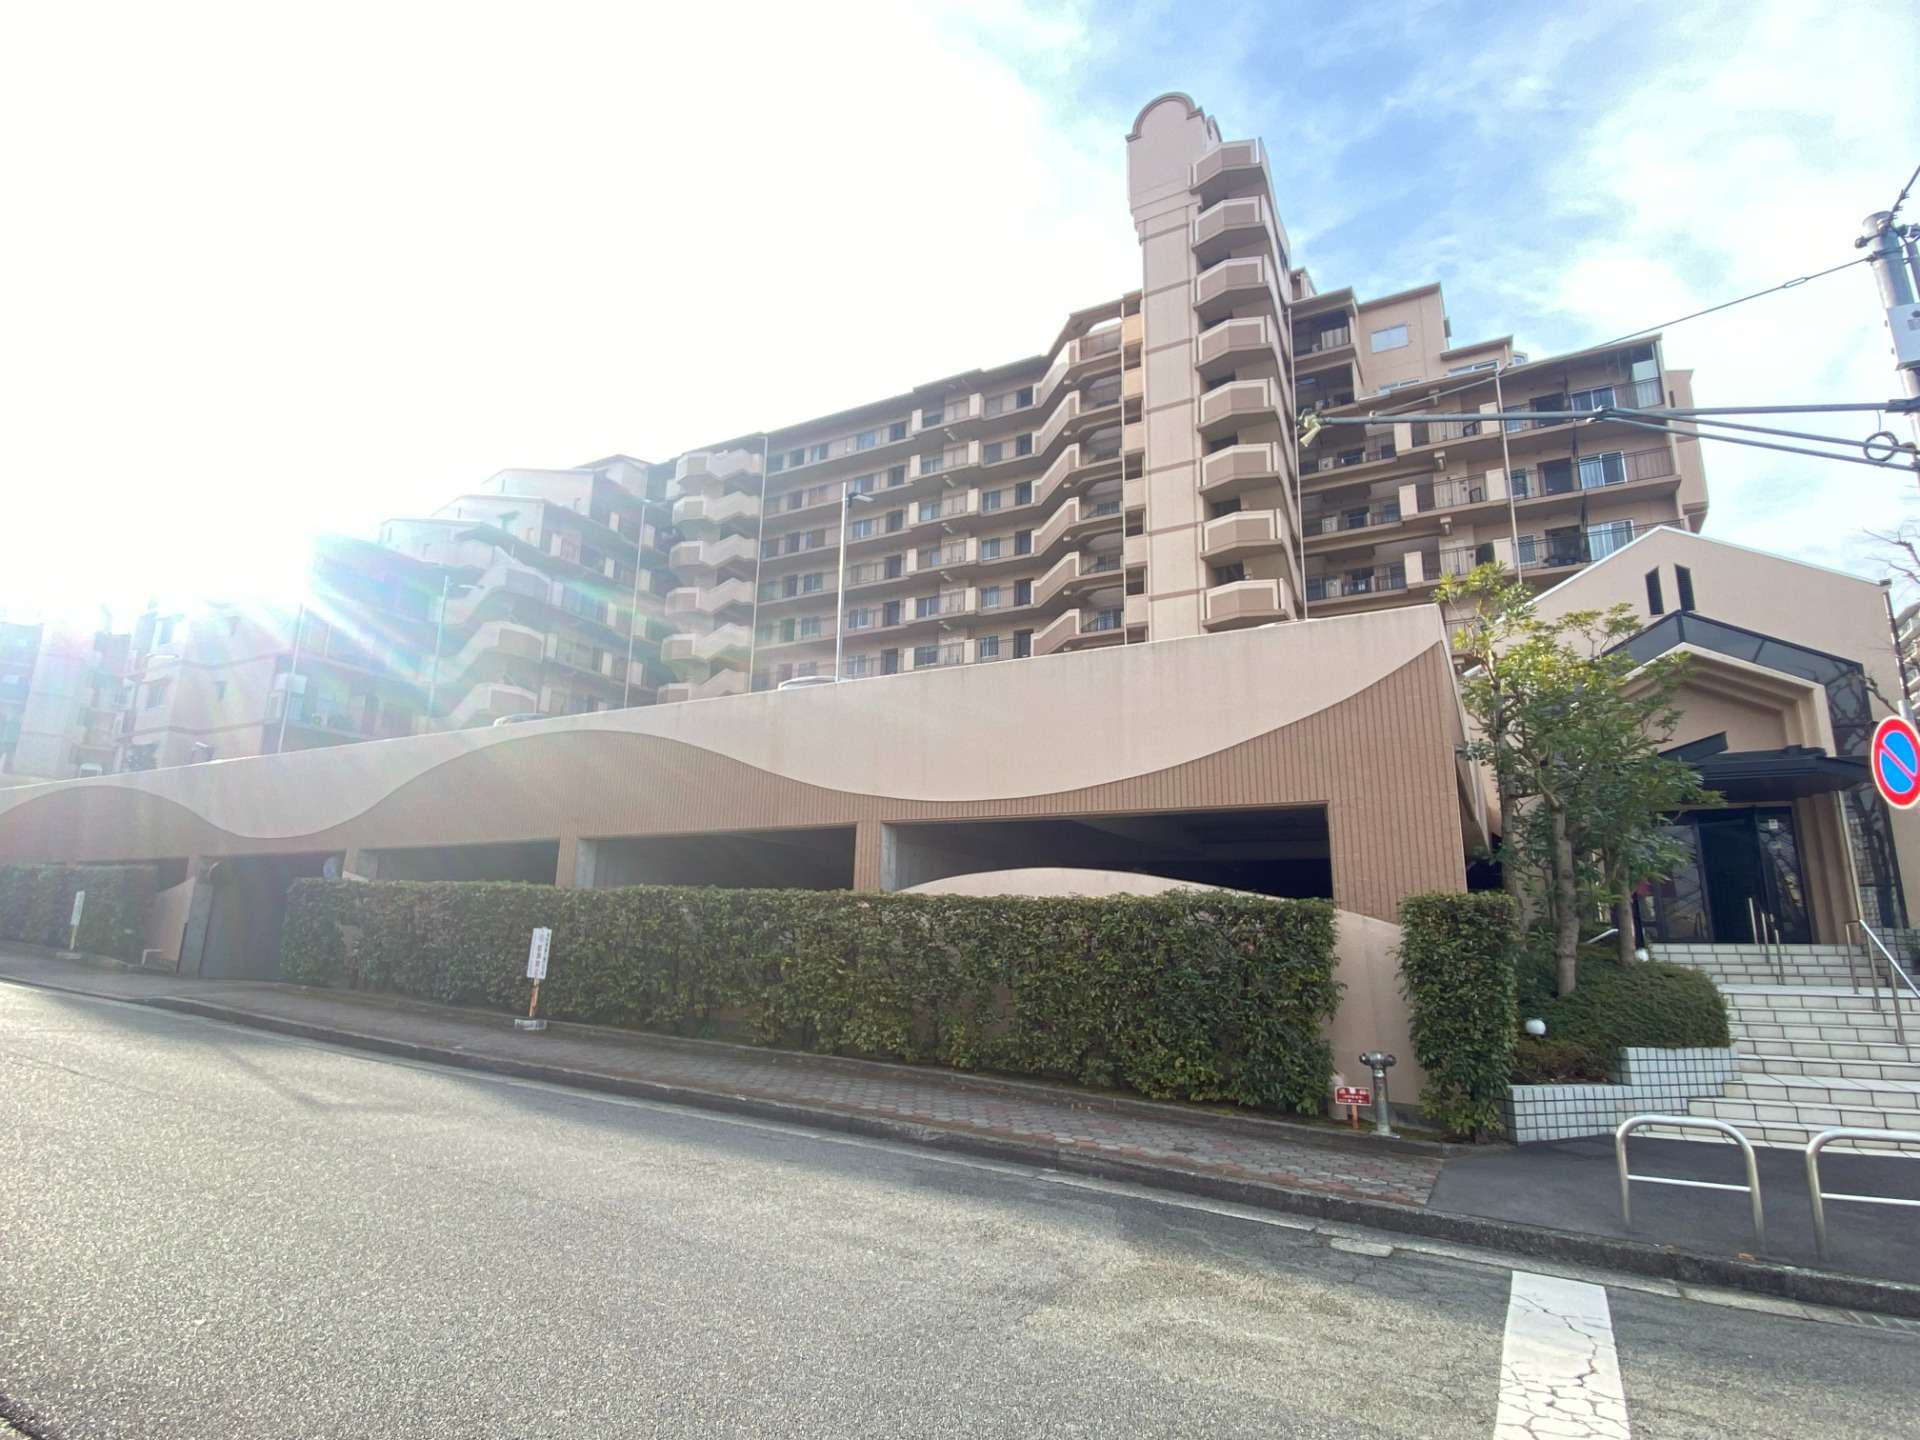 ユーユーフォームが買い取った兵庫県三田市のマンションの画像